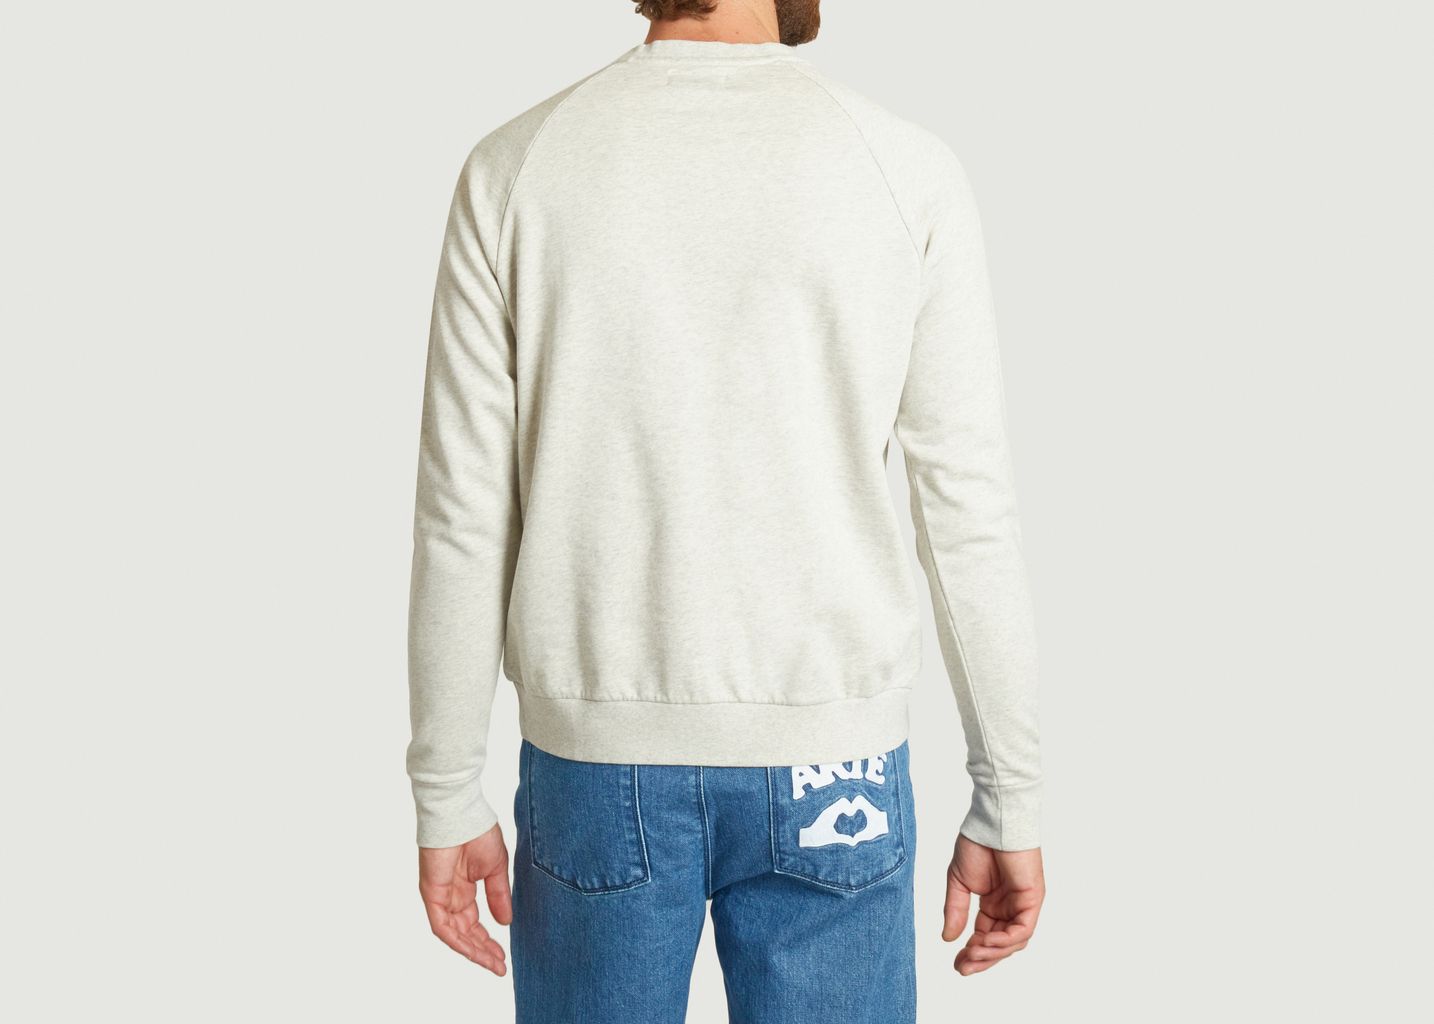 Reggie Sweatshirt - Cuisse de Grenouille